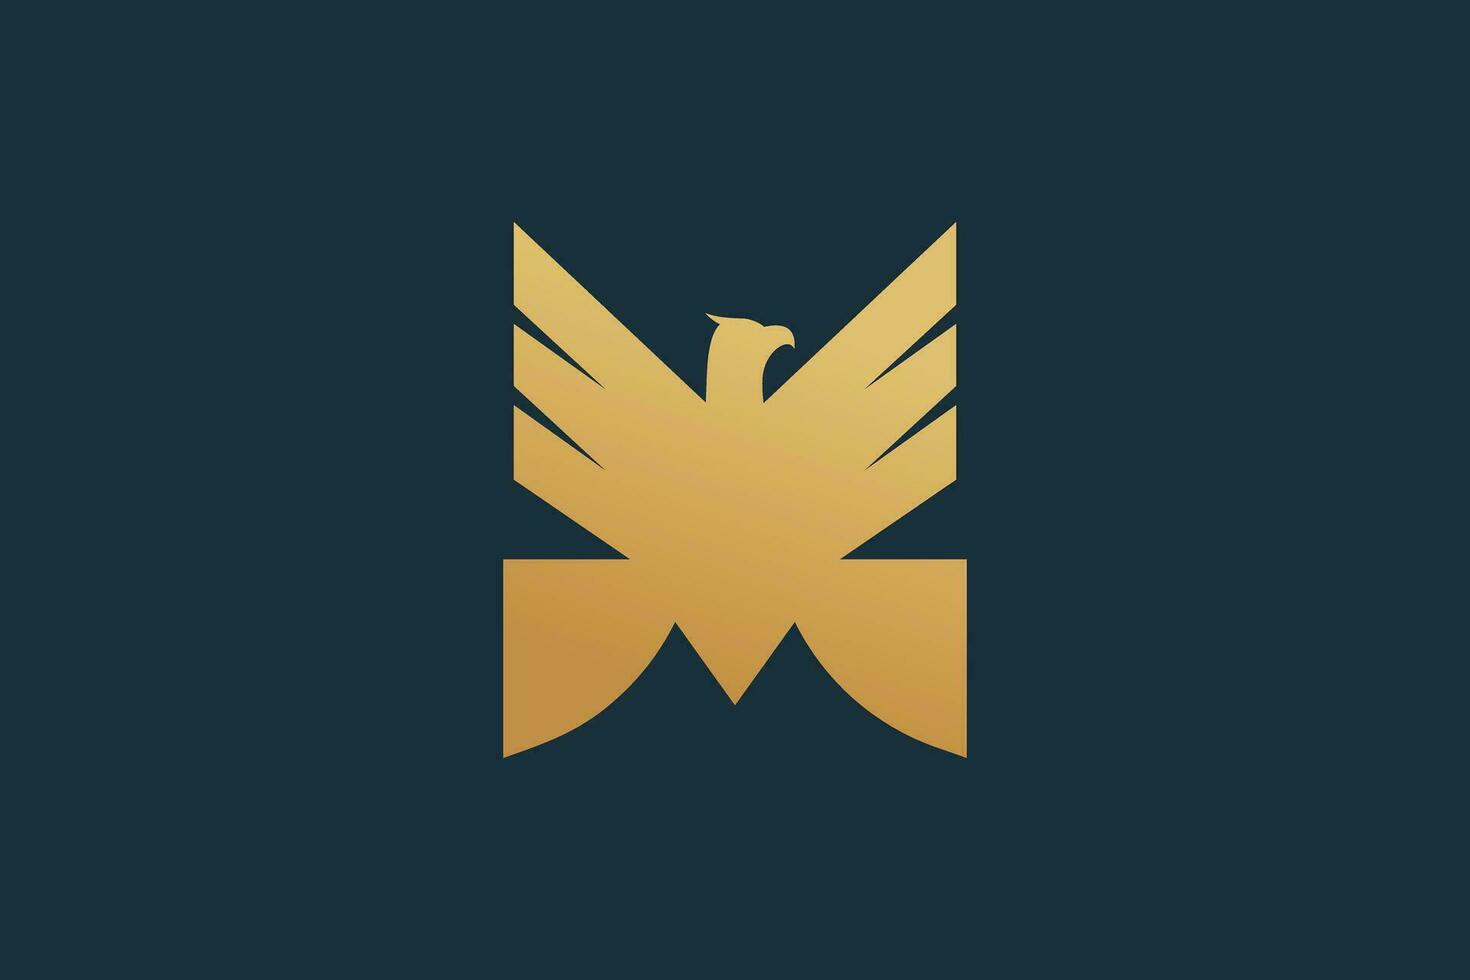 Eagle logo vector with modern concept creative unique design